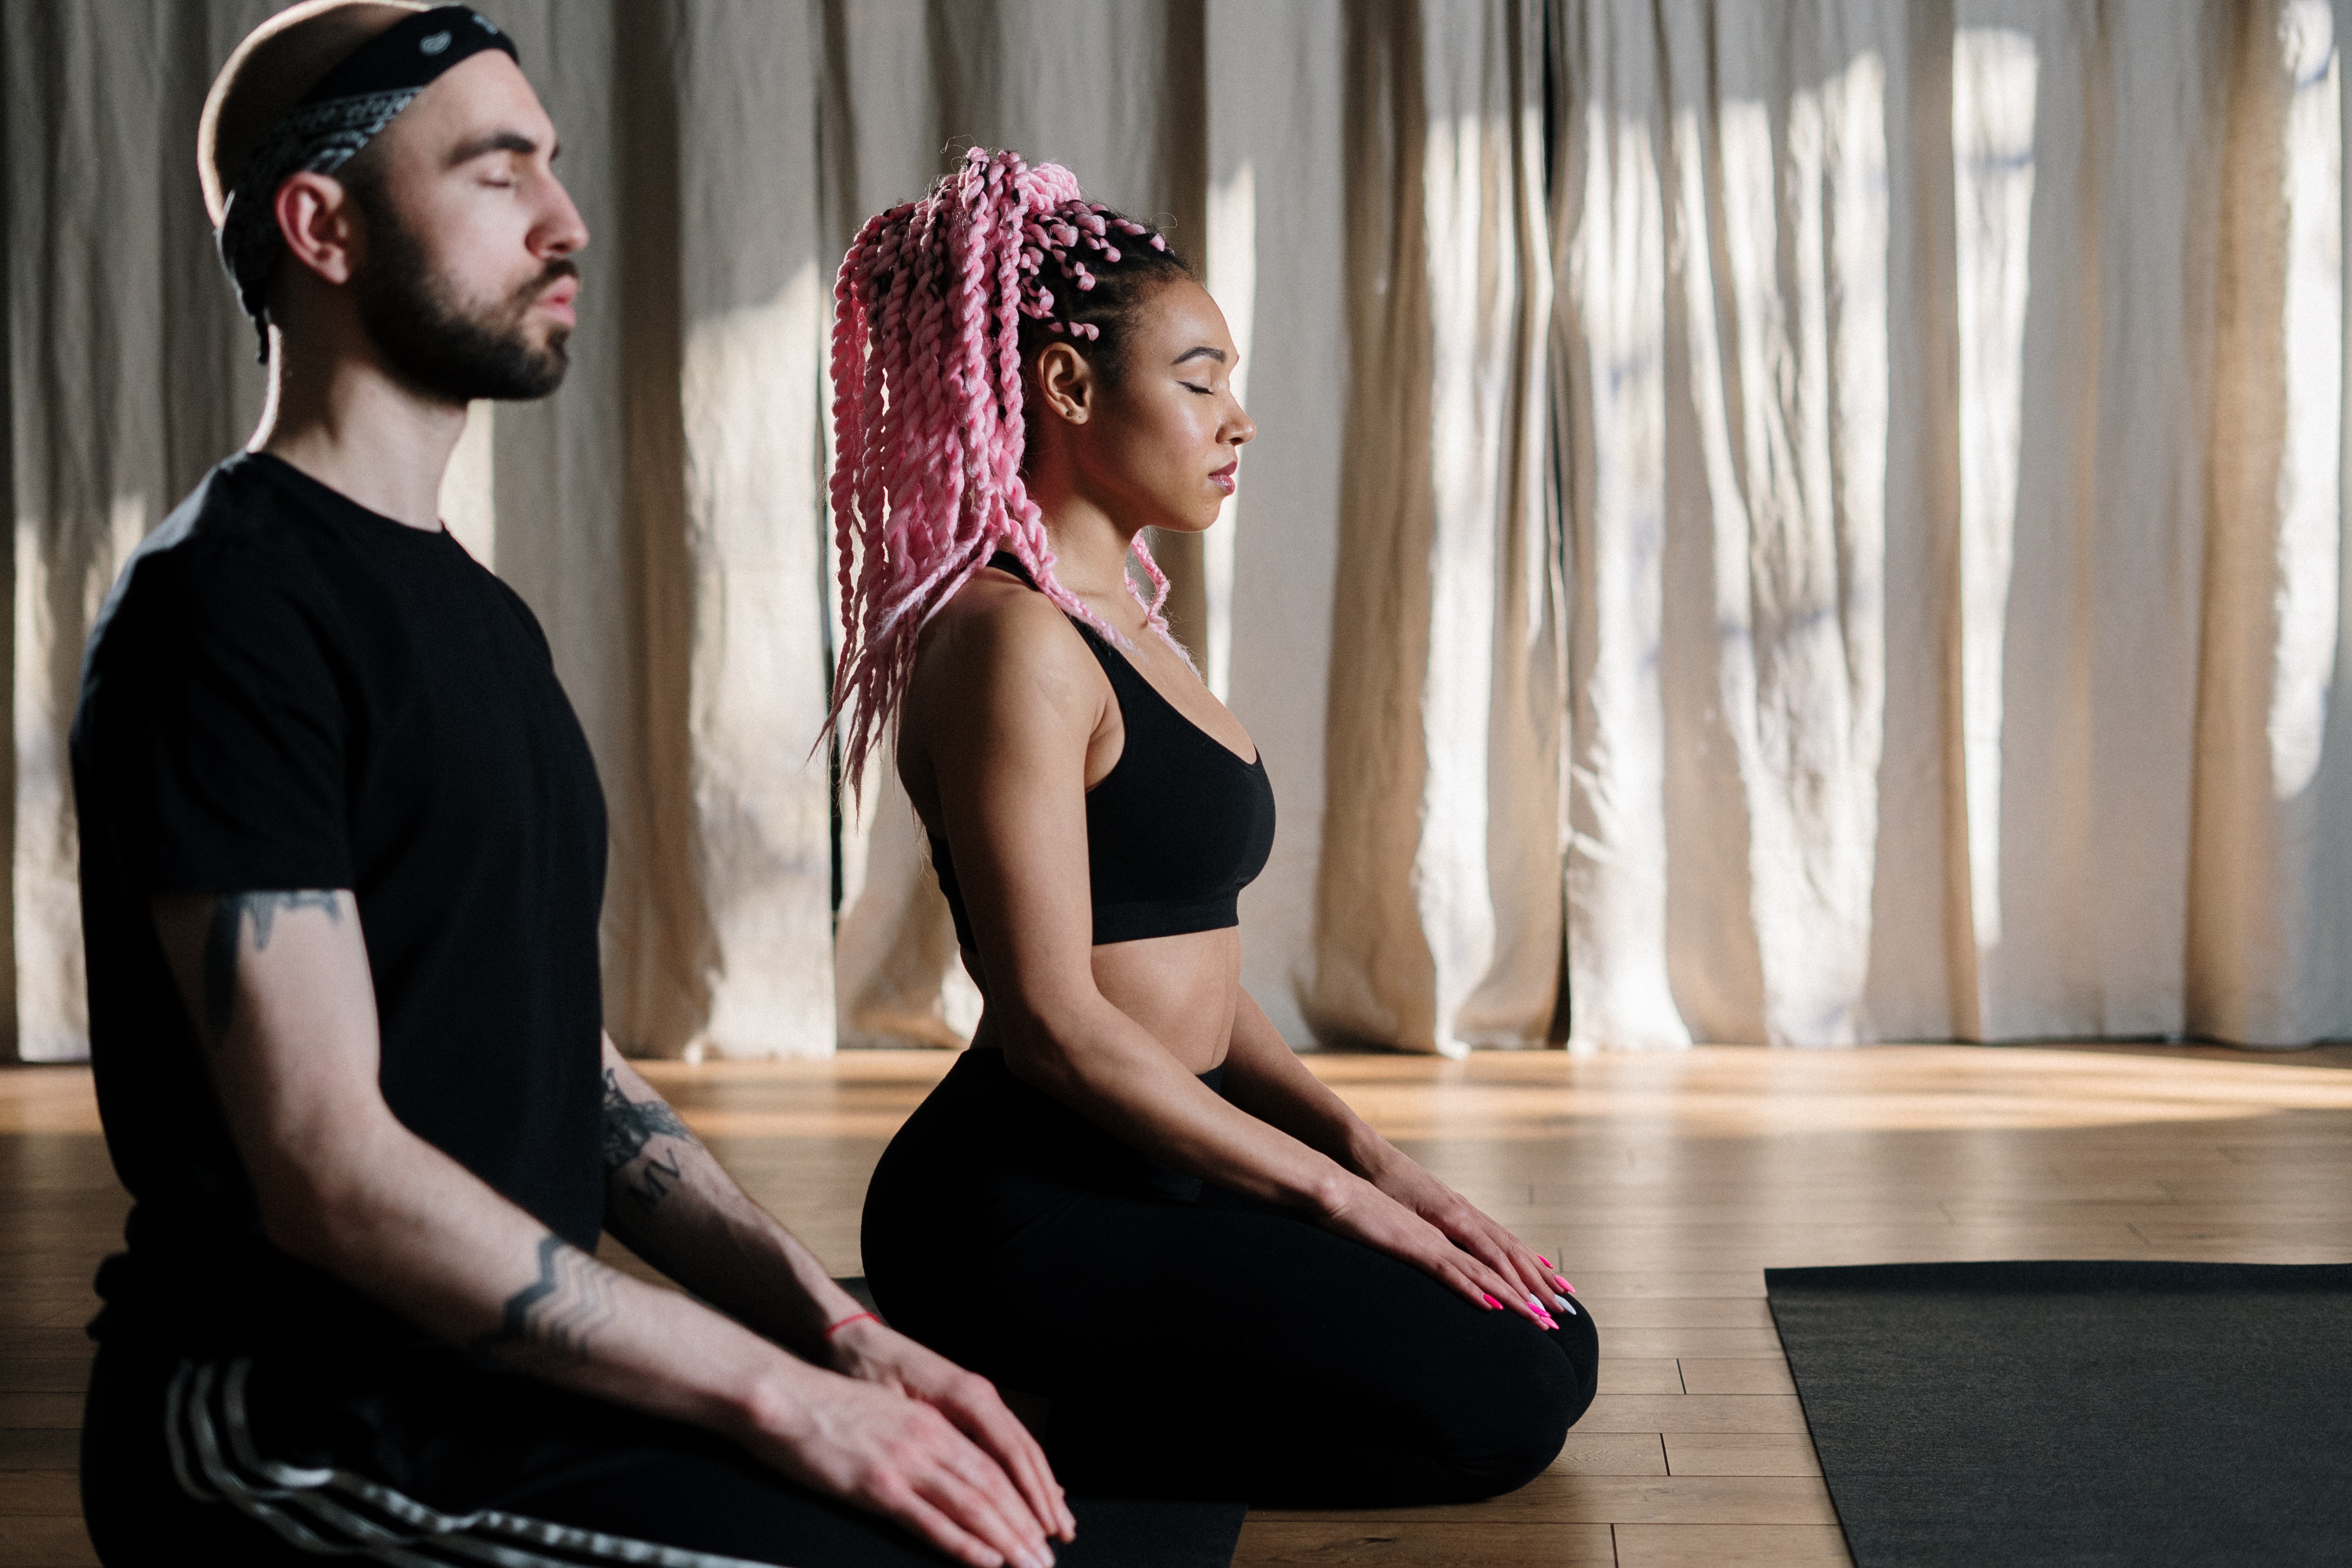 Медитация: как успокаиваться и бороться с негативными мыслями